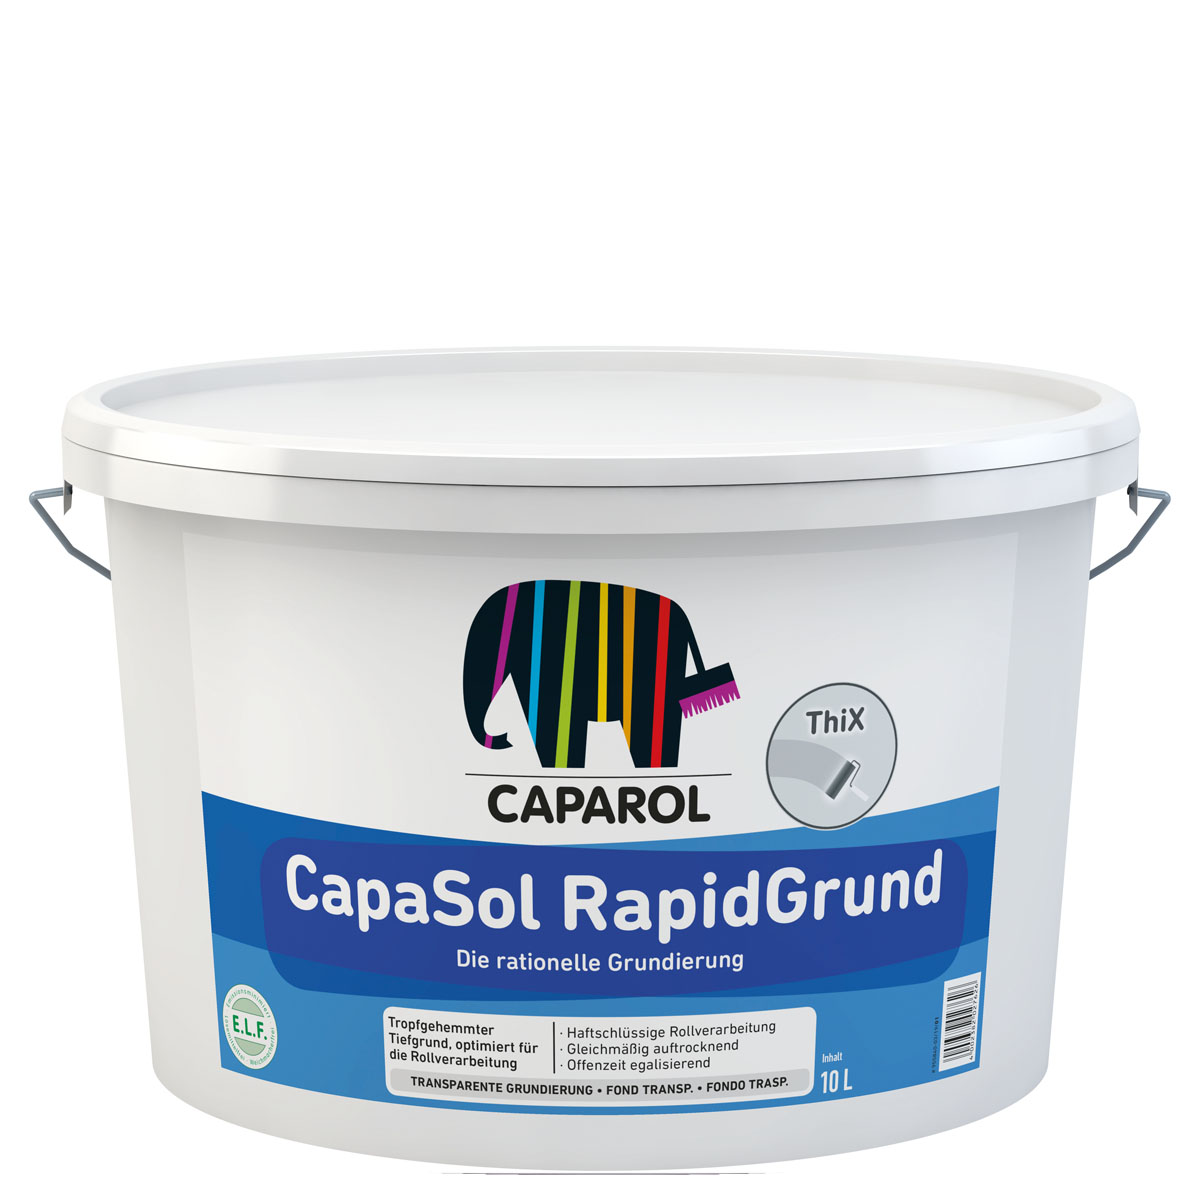 caparol_capasol-rapidgrund_10l_gross